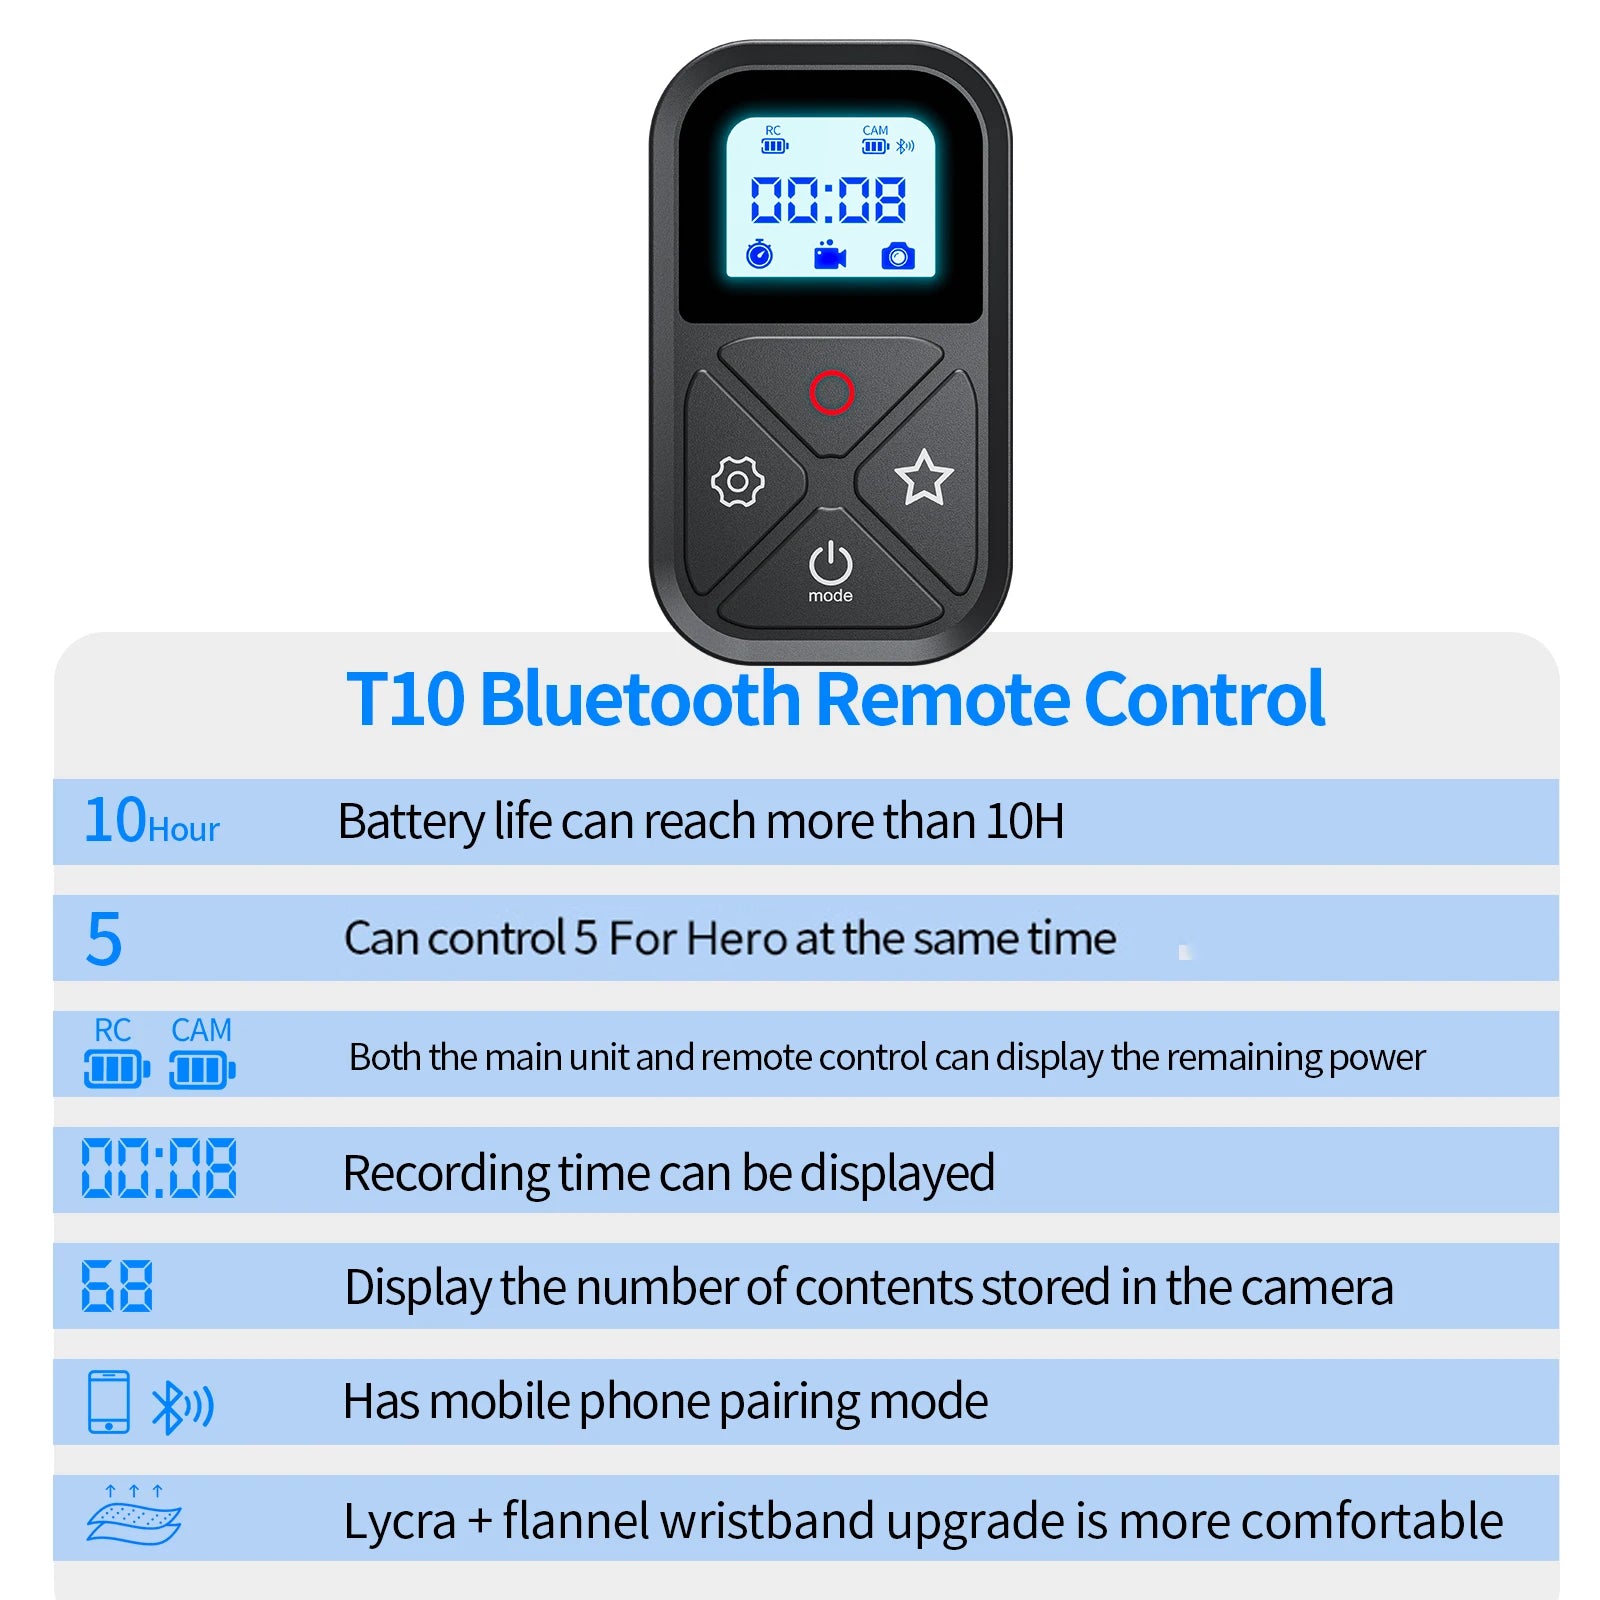 Télécommande TELESIN Bluetooth 80M pour GoPro 12 11 10 9 8 Max